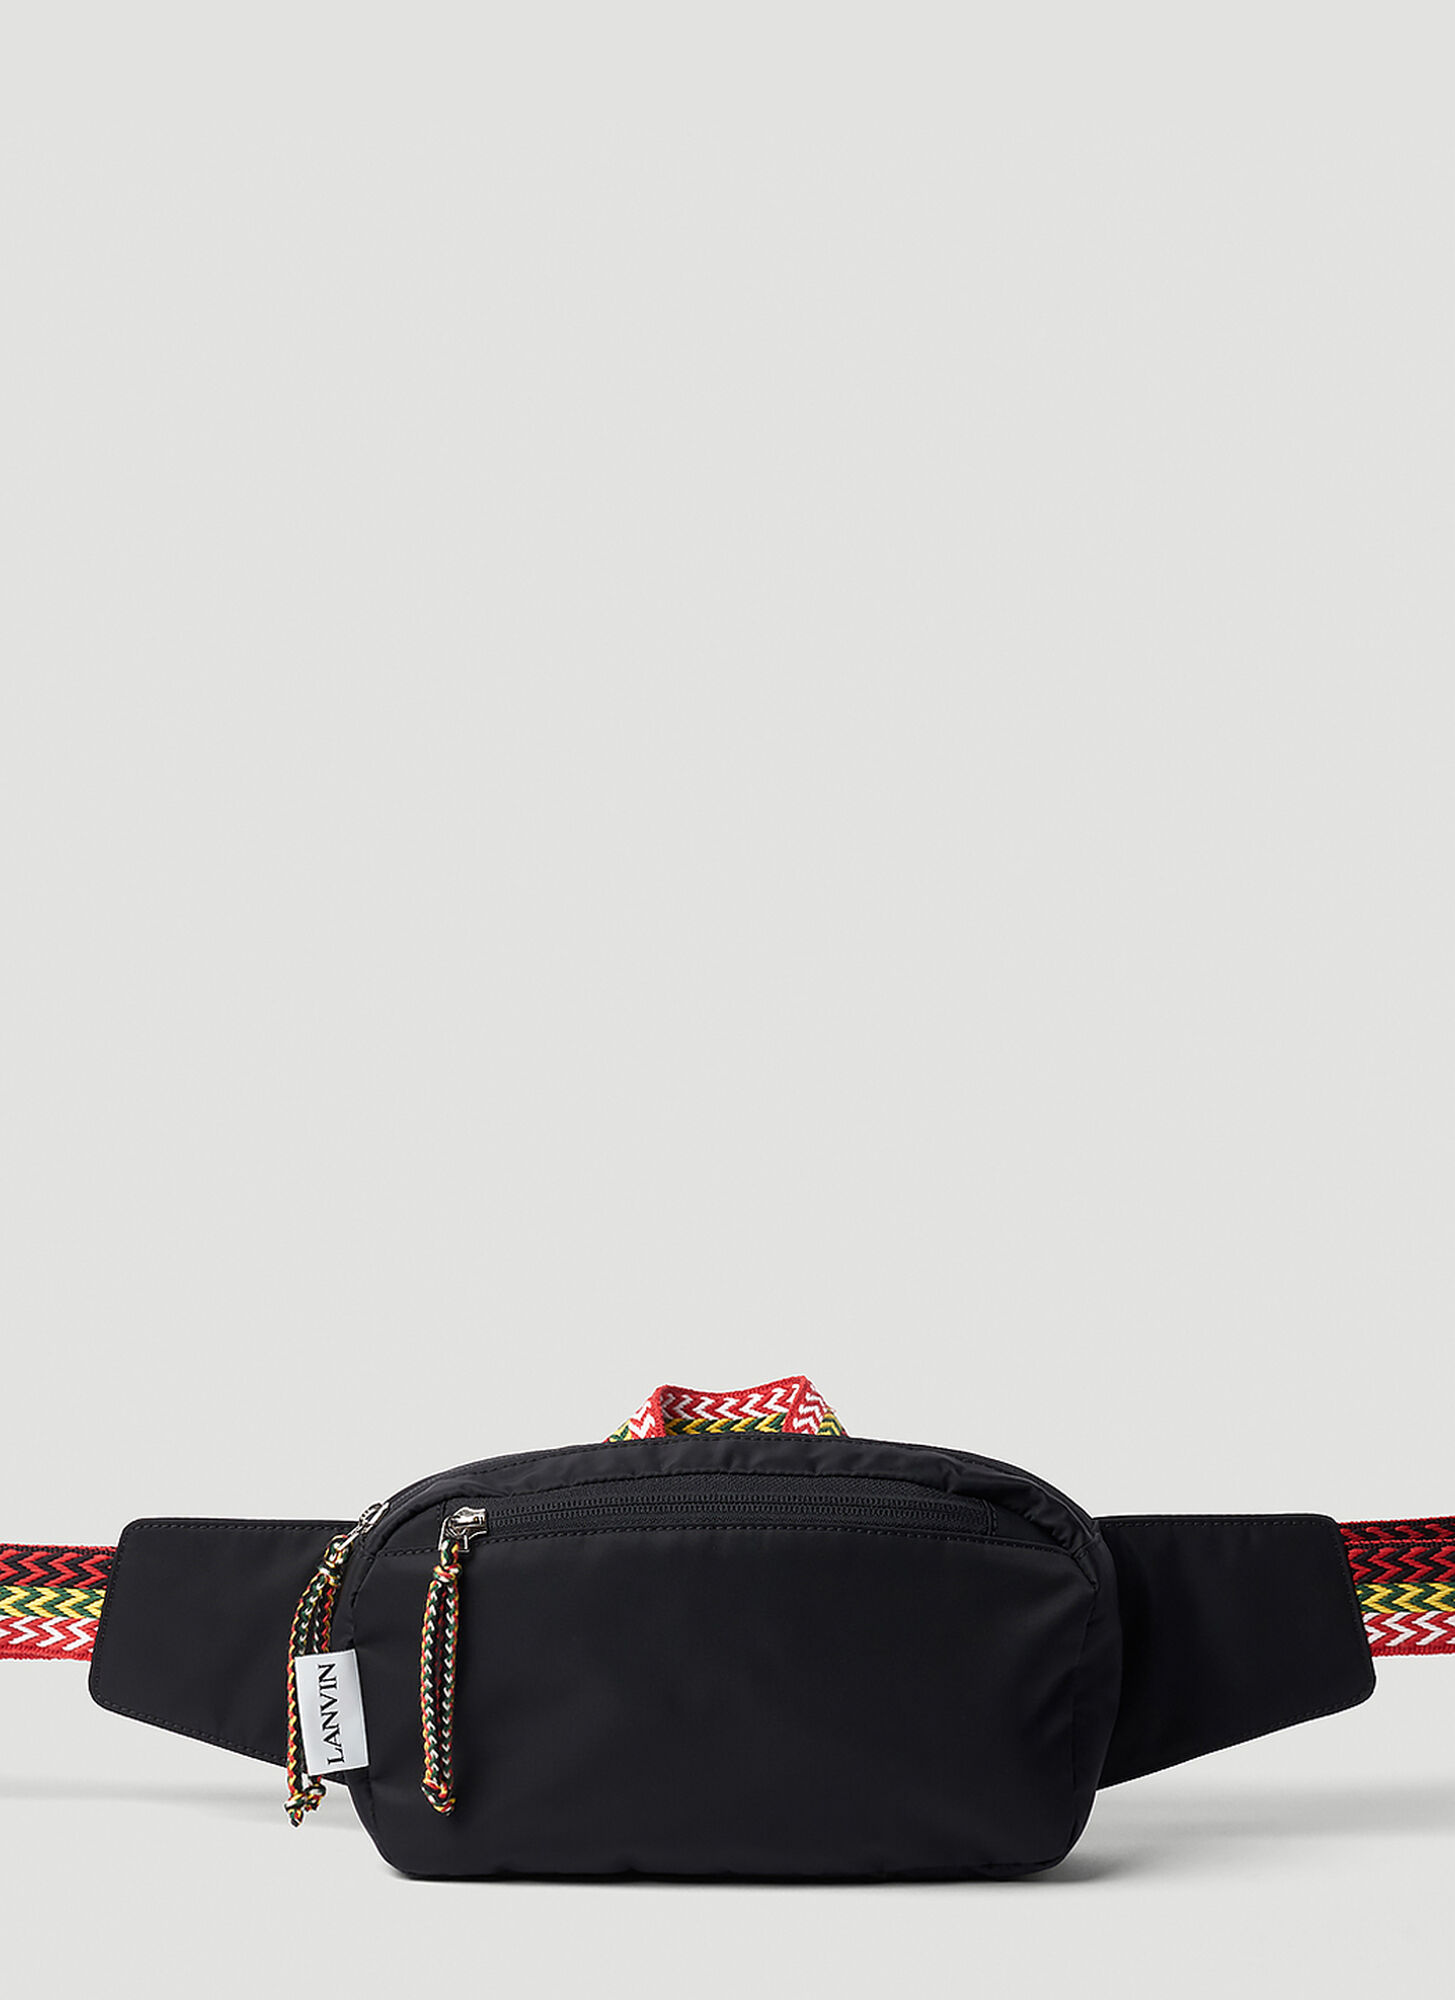 Lanvin Curb Belt Bag In Black